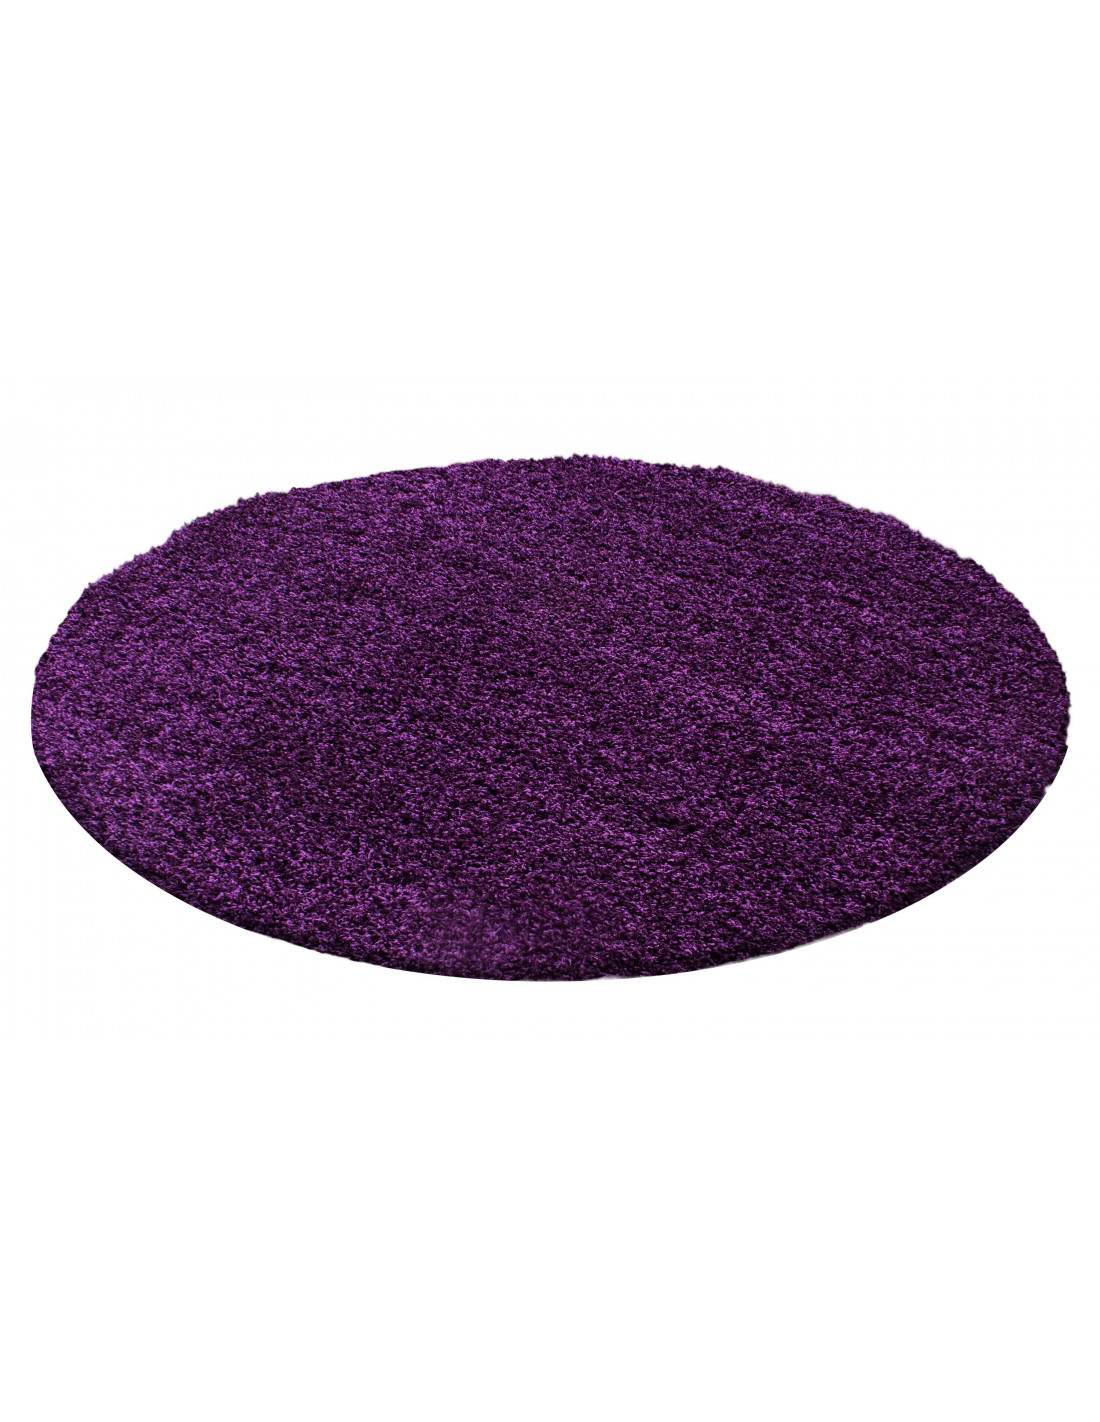 Hoogpolig tapijt, hoogpolig, hoogpolig, woonkamer, poolhoogte 3 cm, effen paars